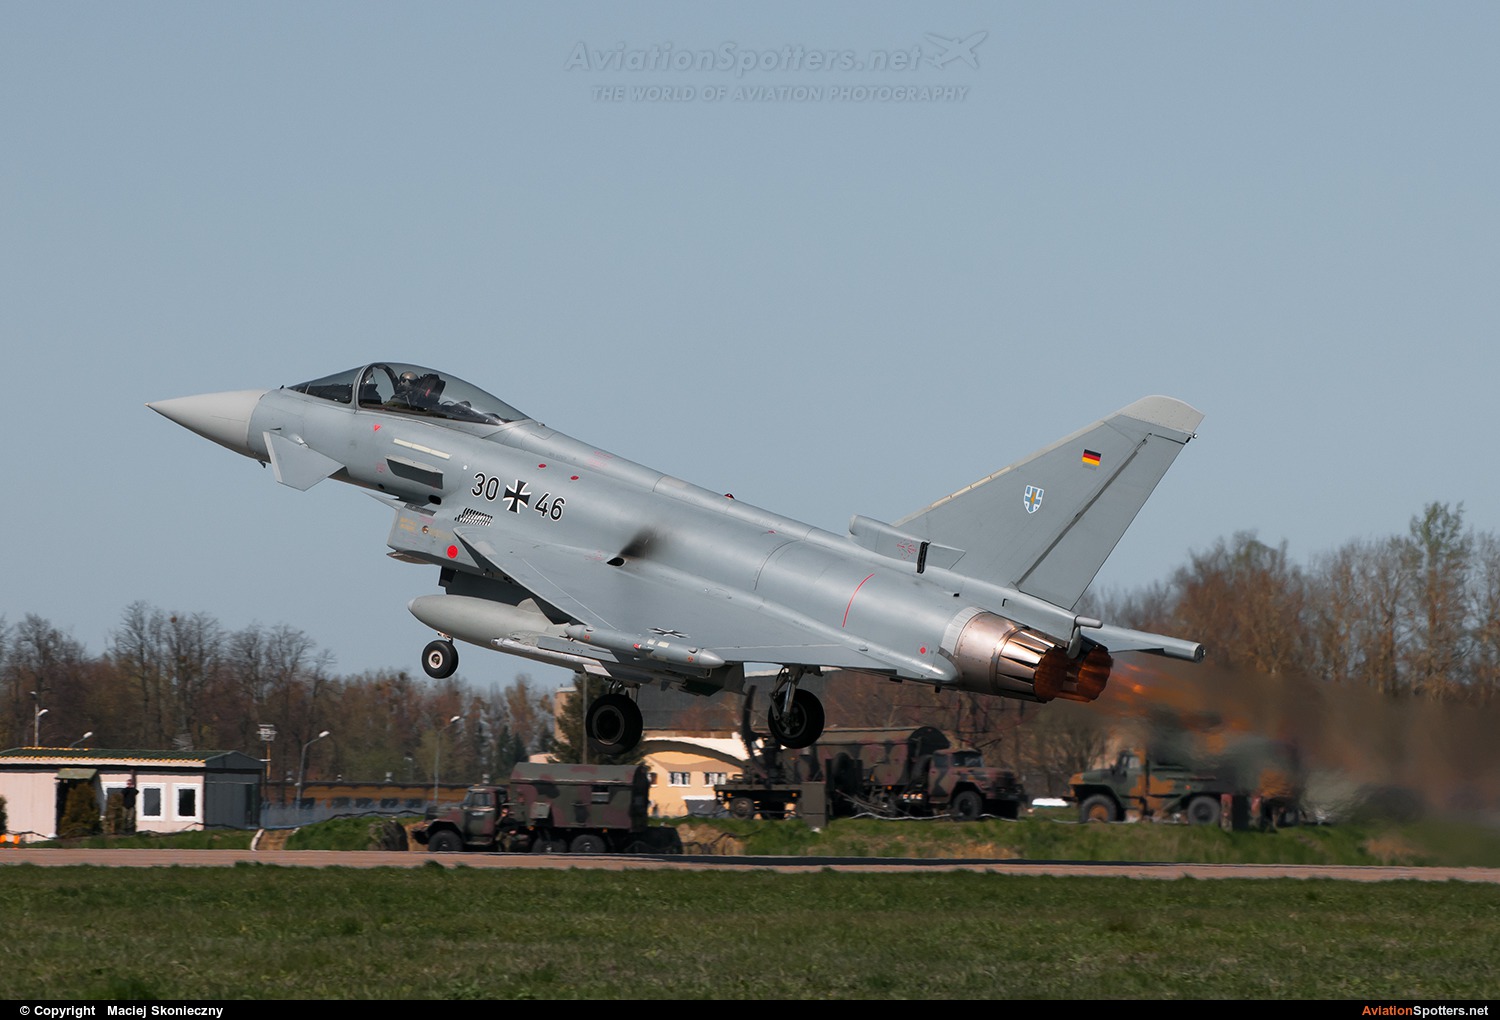 Germany - Air Force  -  Typhoon  (30+46) By Maciej Skonieczny (Maciej Skonieczny)